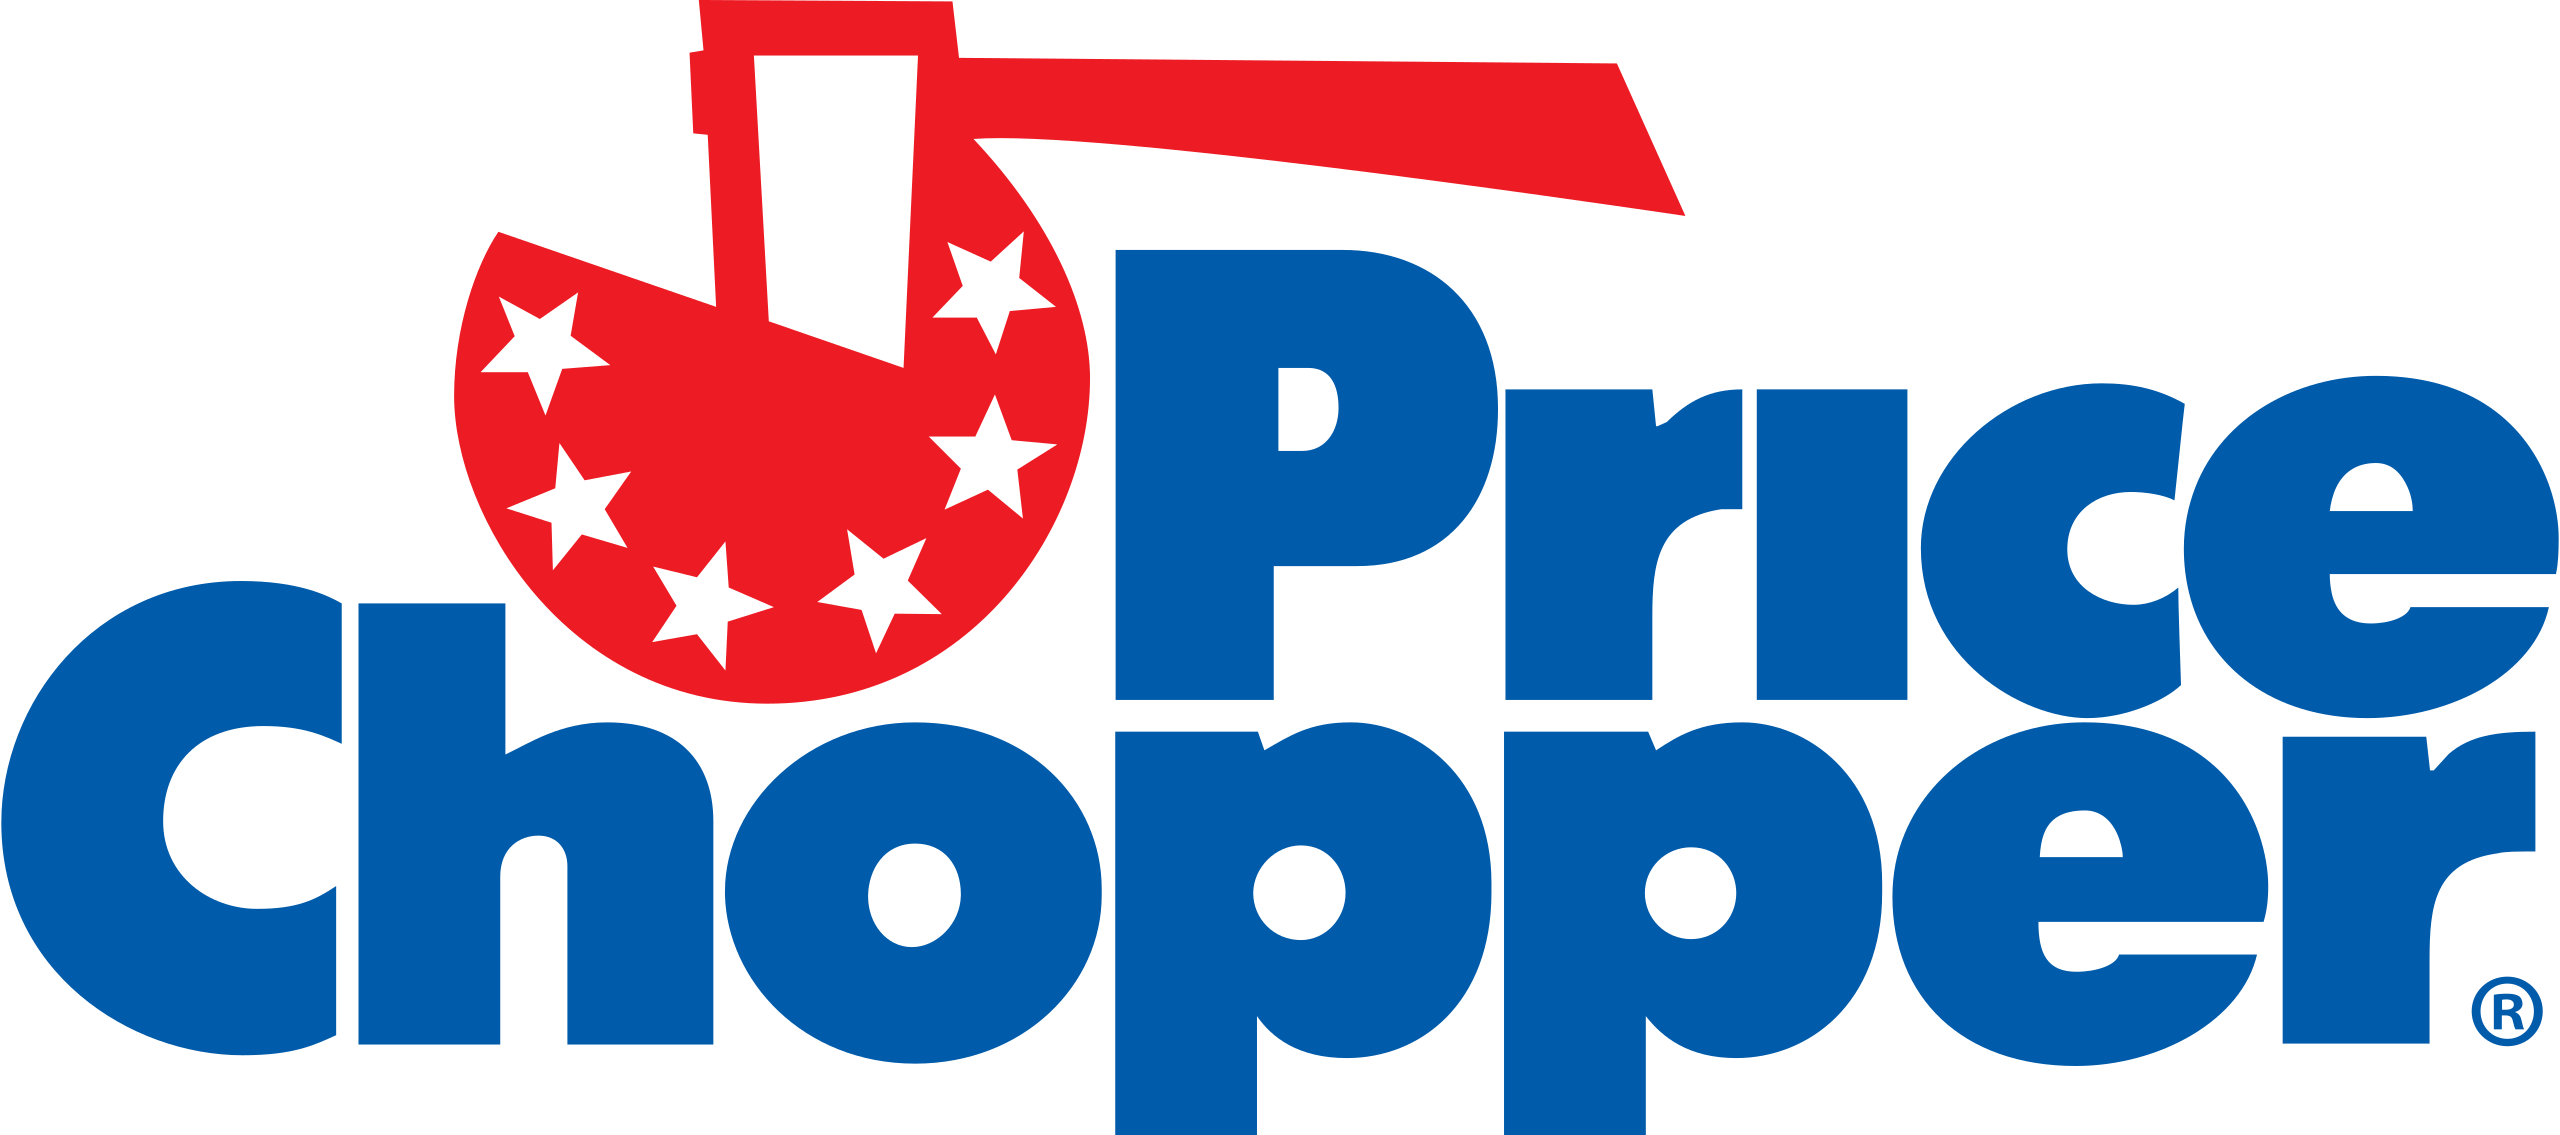 Price_Chopper_(logo).svg